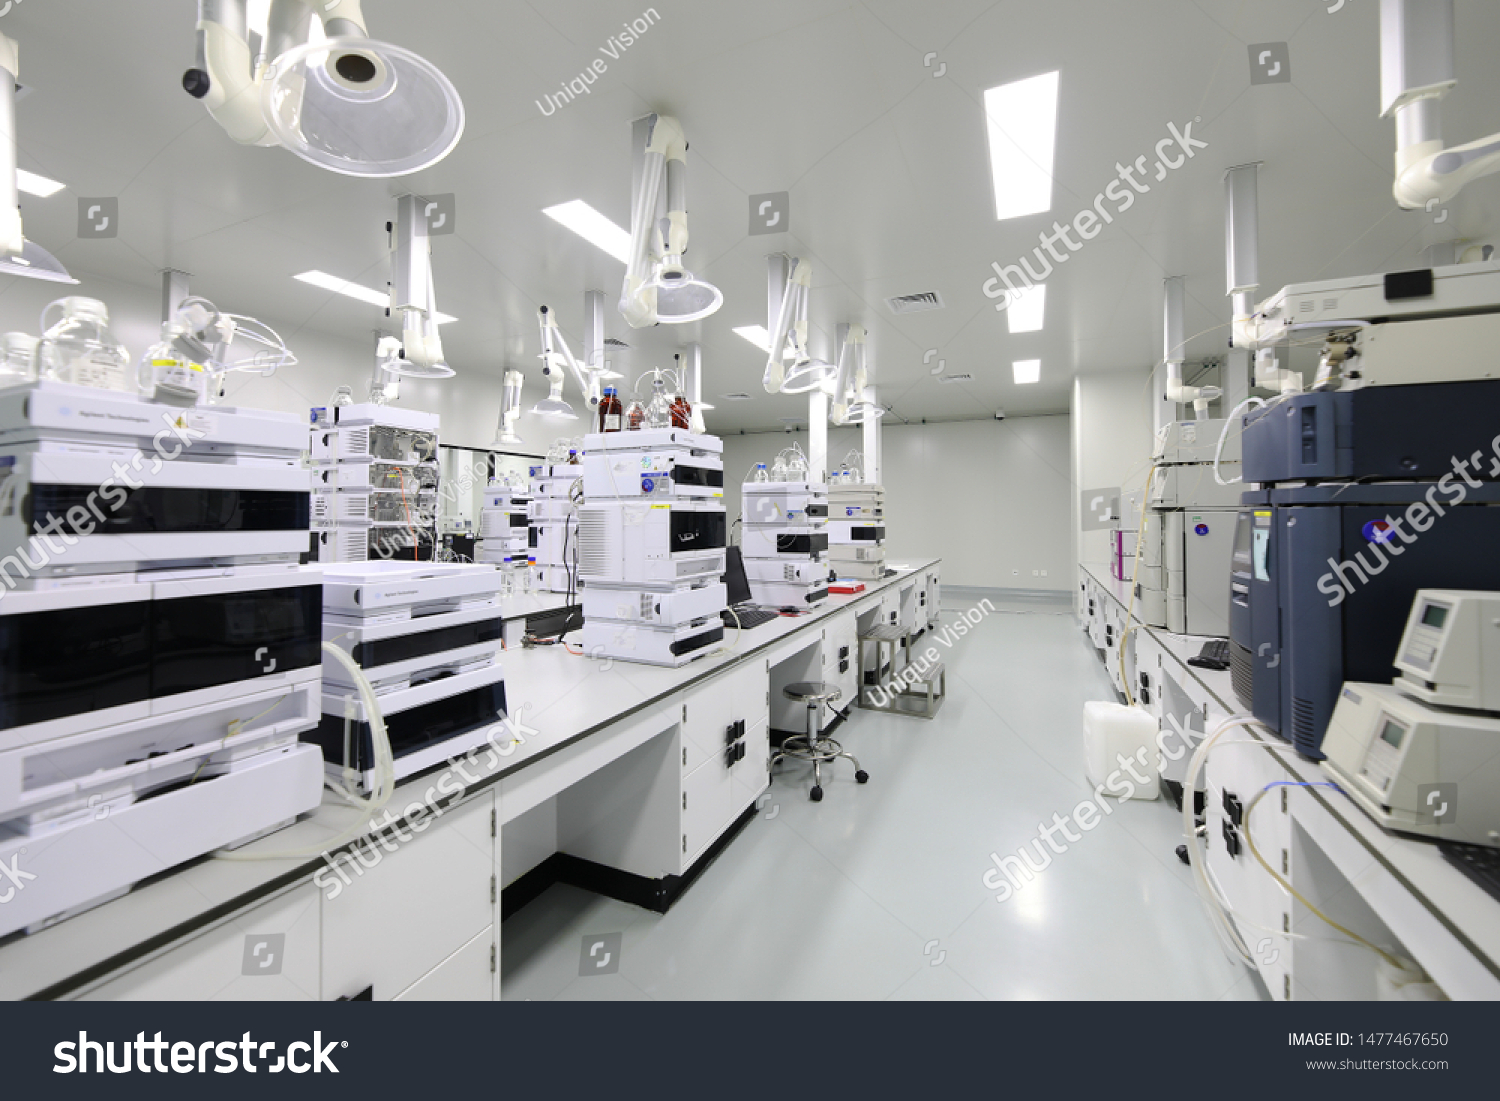 BEIJING, CHINA - JUNE 03, 2019: Drug manufacturing laboratory equipment. #1477467650